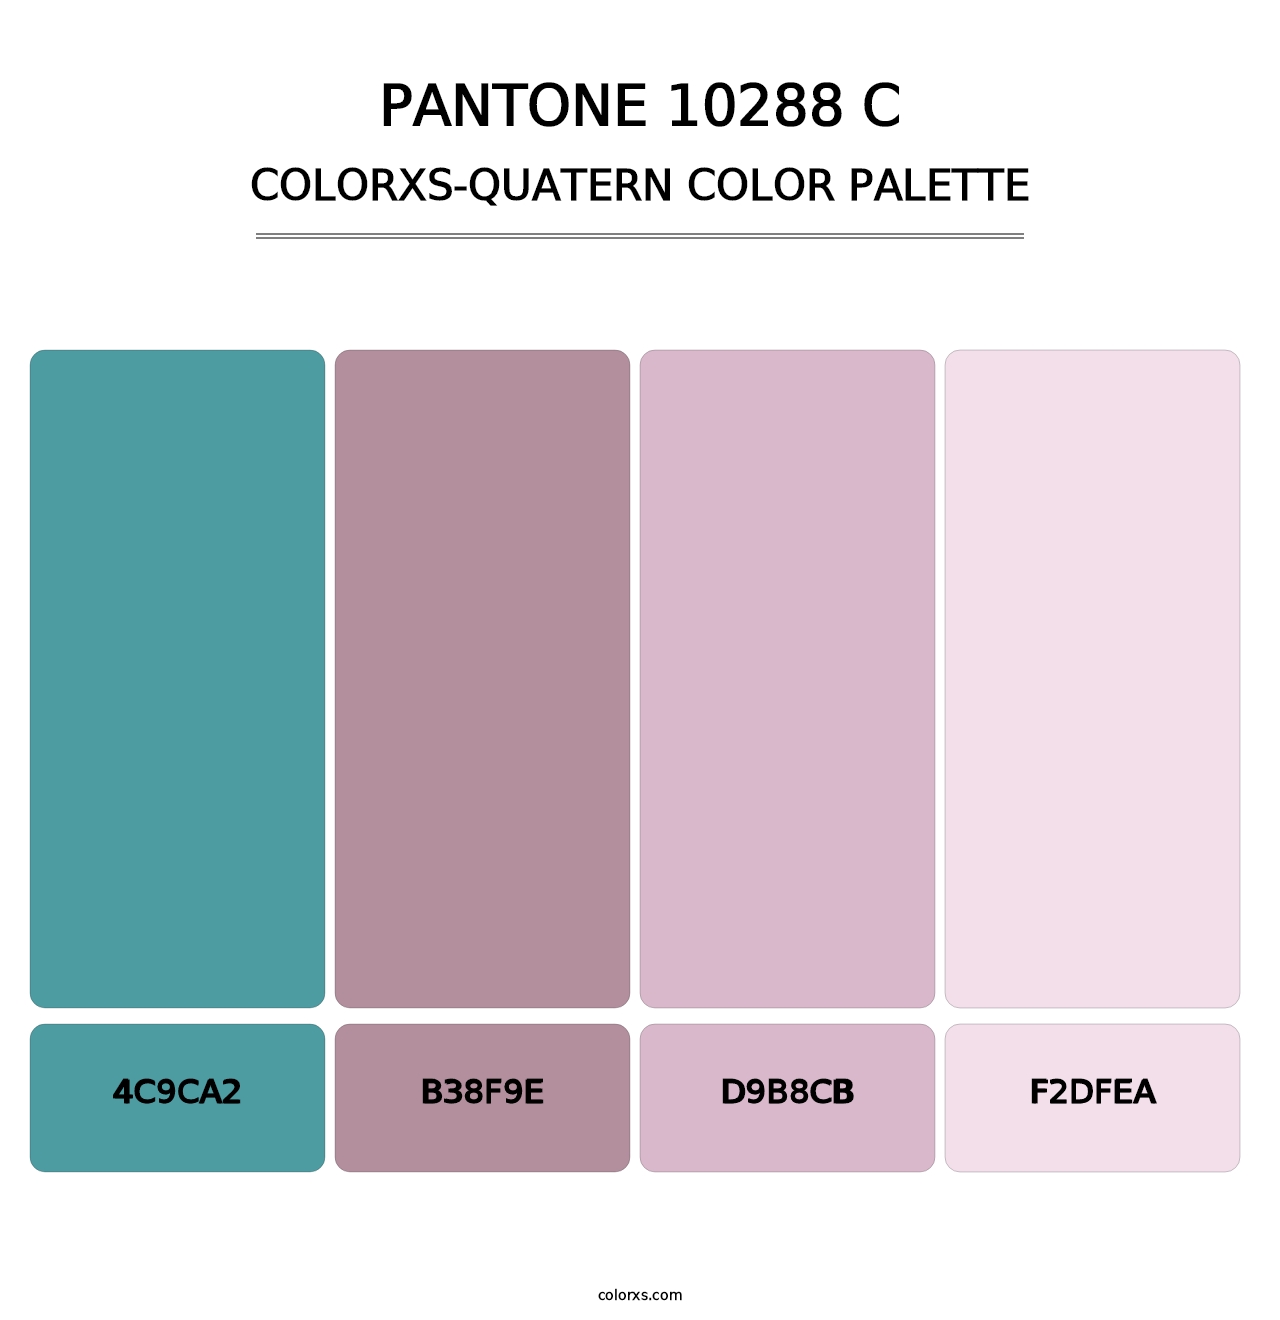 PANTONE 10288 C - Colorxs Quatern Palette